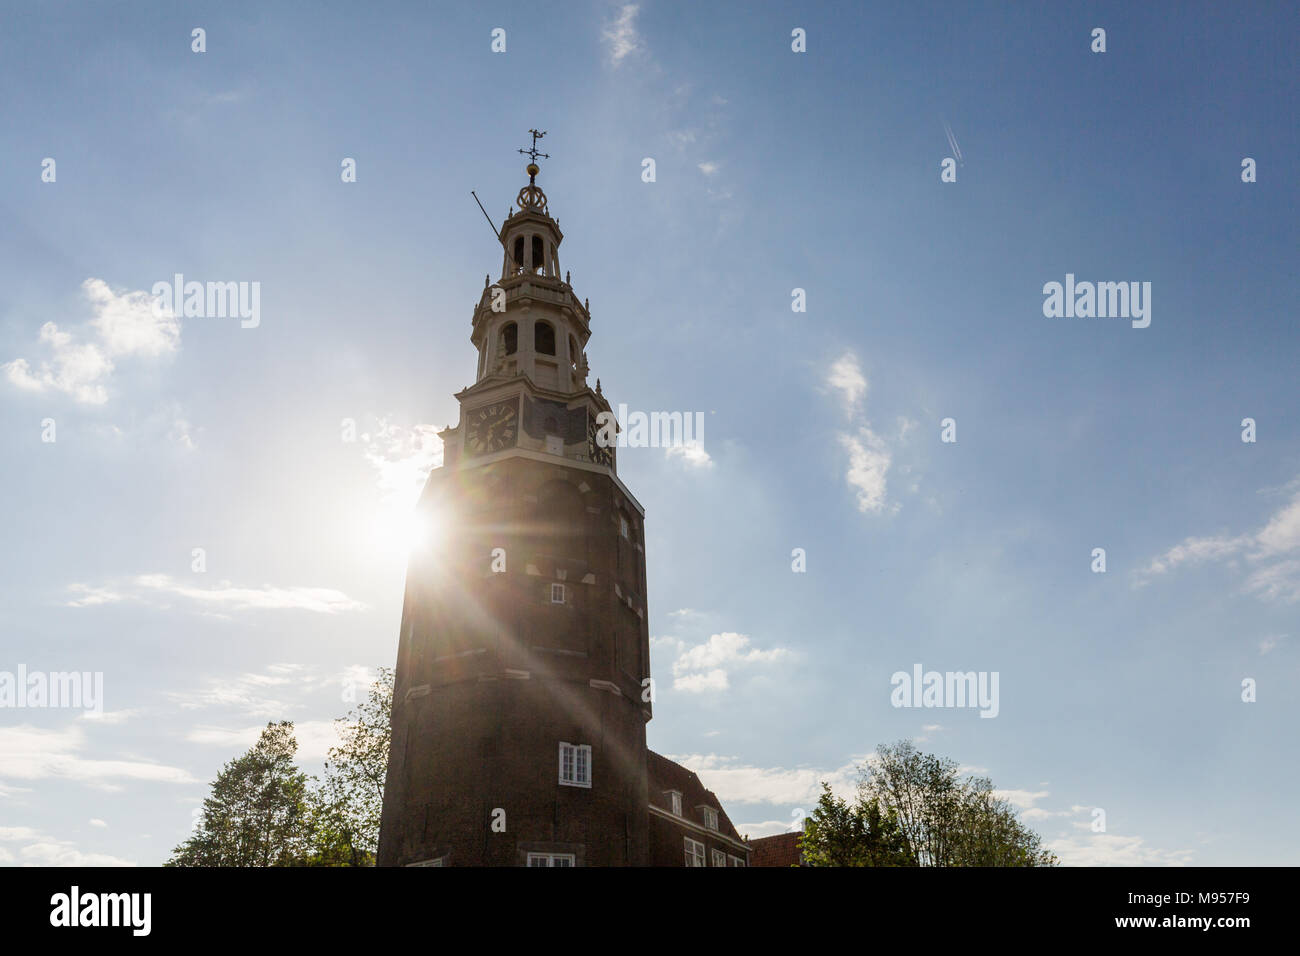 AMSTERDAM, NIEDERLANDE, 27. MAI 2017: Blick auf die Montelbaanstoren Turm an der Oudeschans Gracht in Amsterdam am 27. Mai 2017. Foto ist auf einem tou gemacht Stockfoto